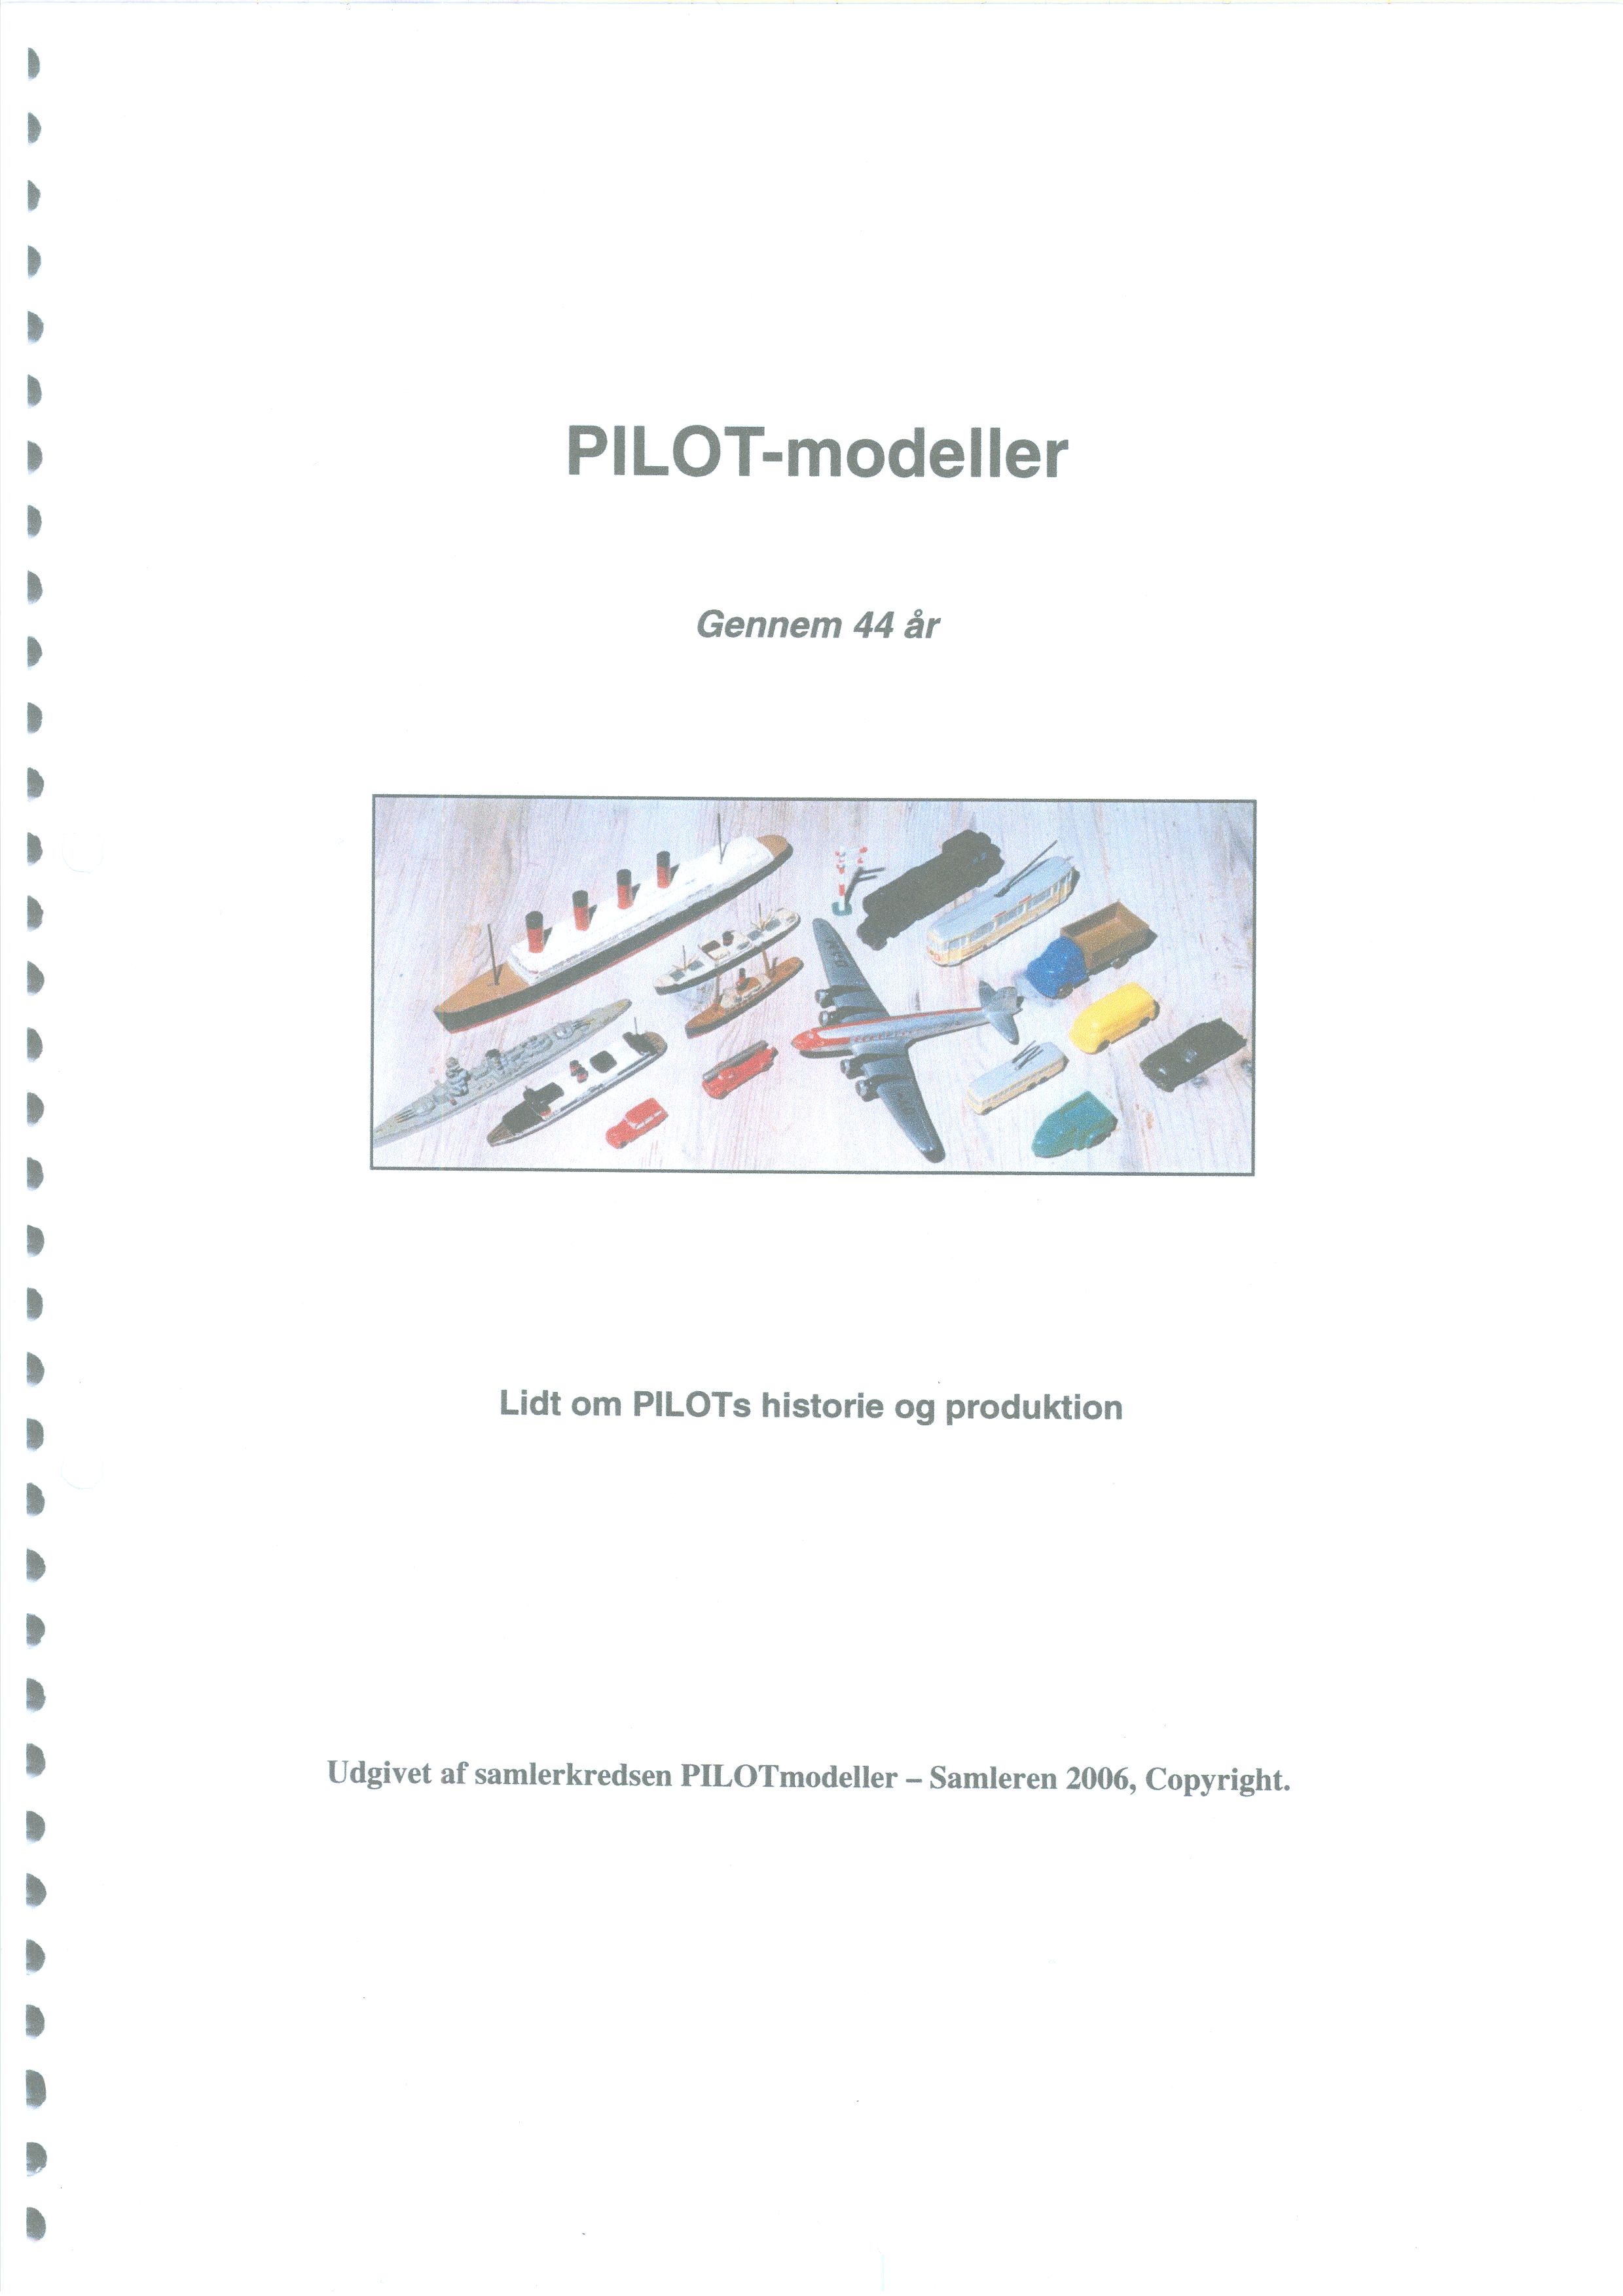 PILOT Modeller02.jpg